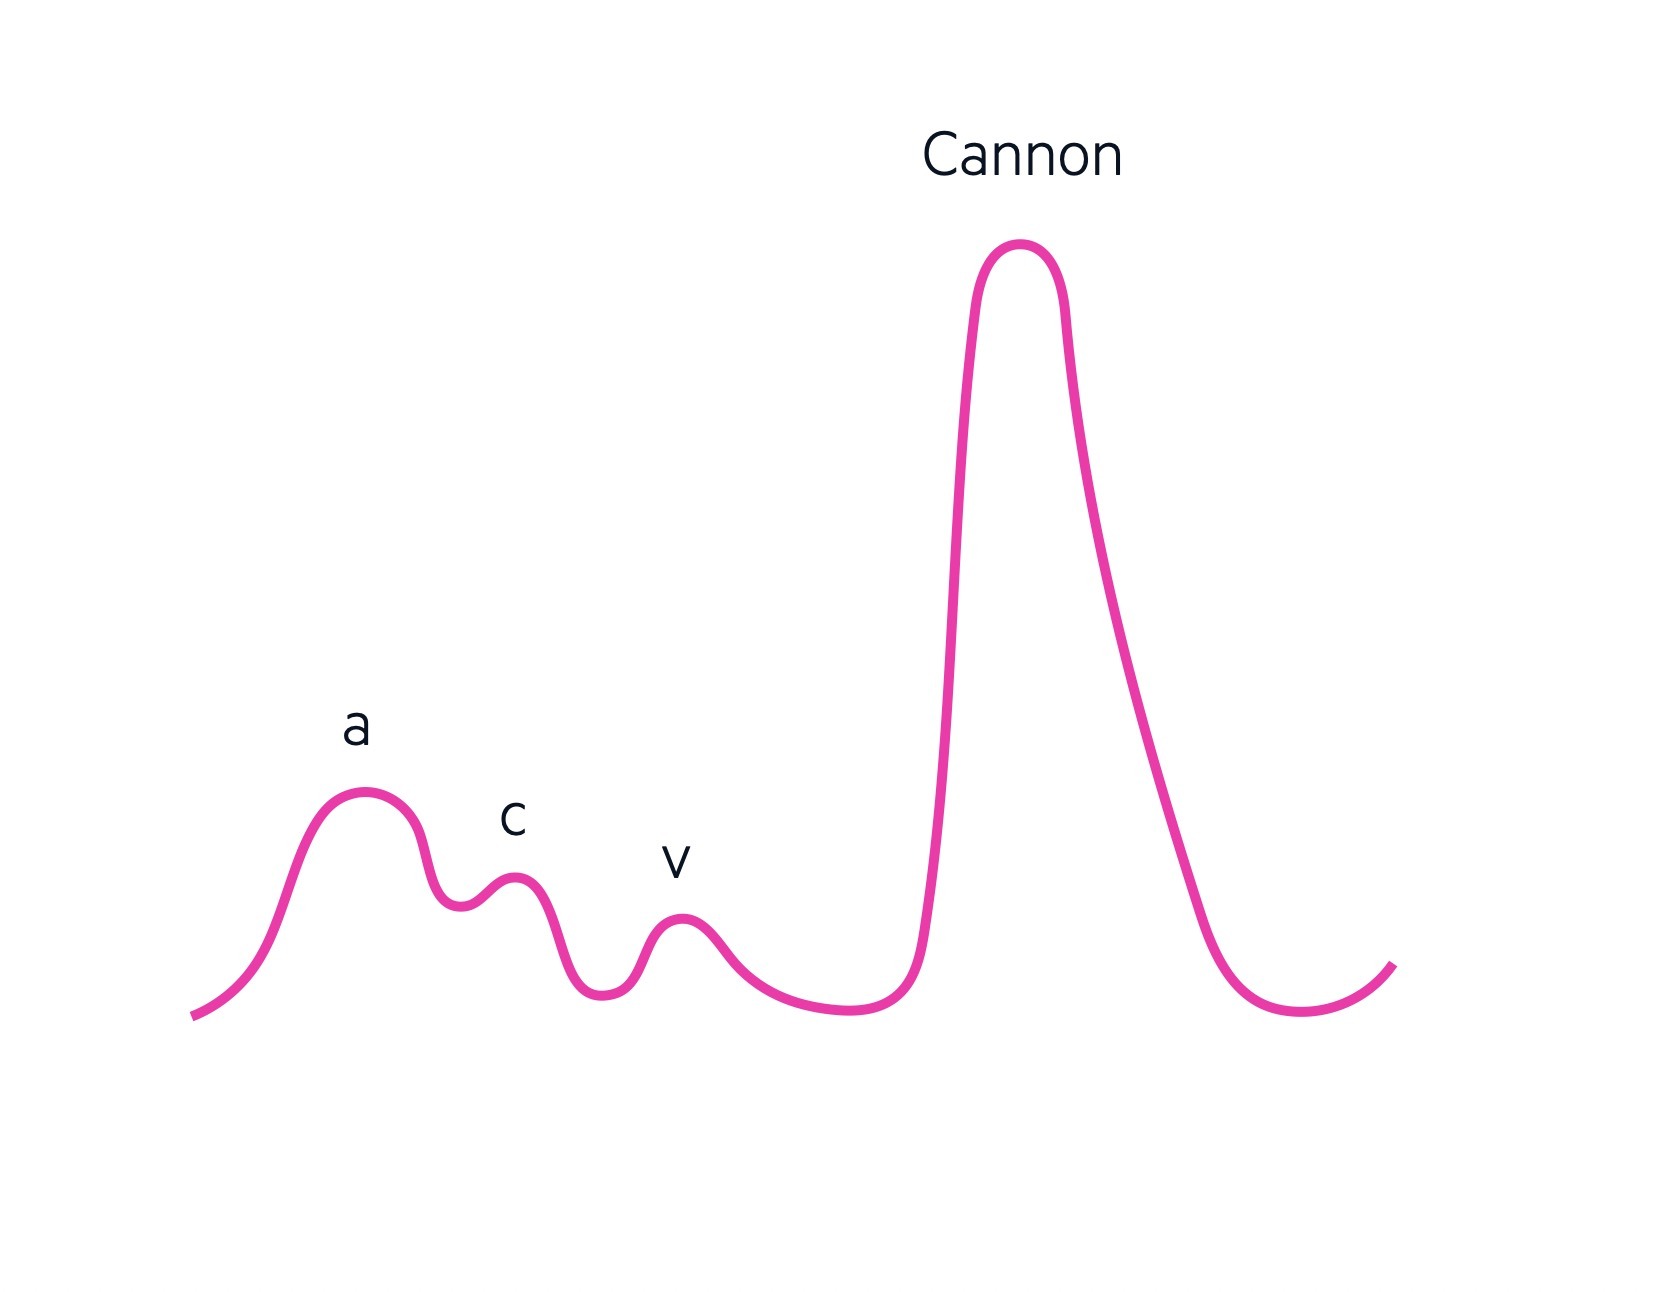 JVP - Cannon wave